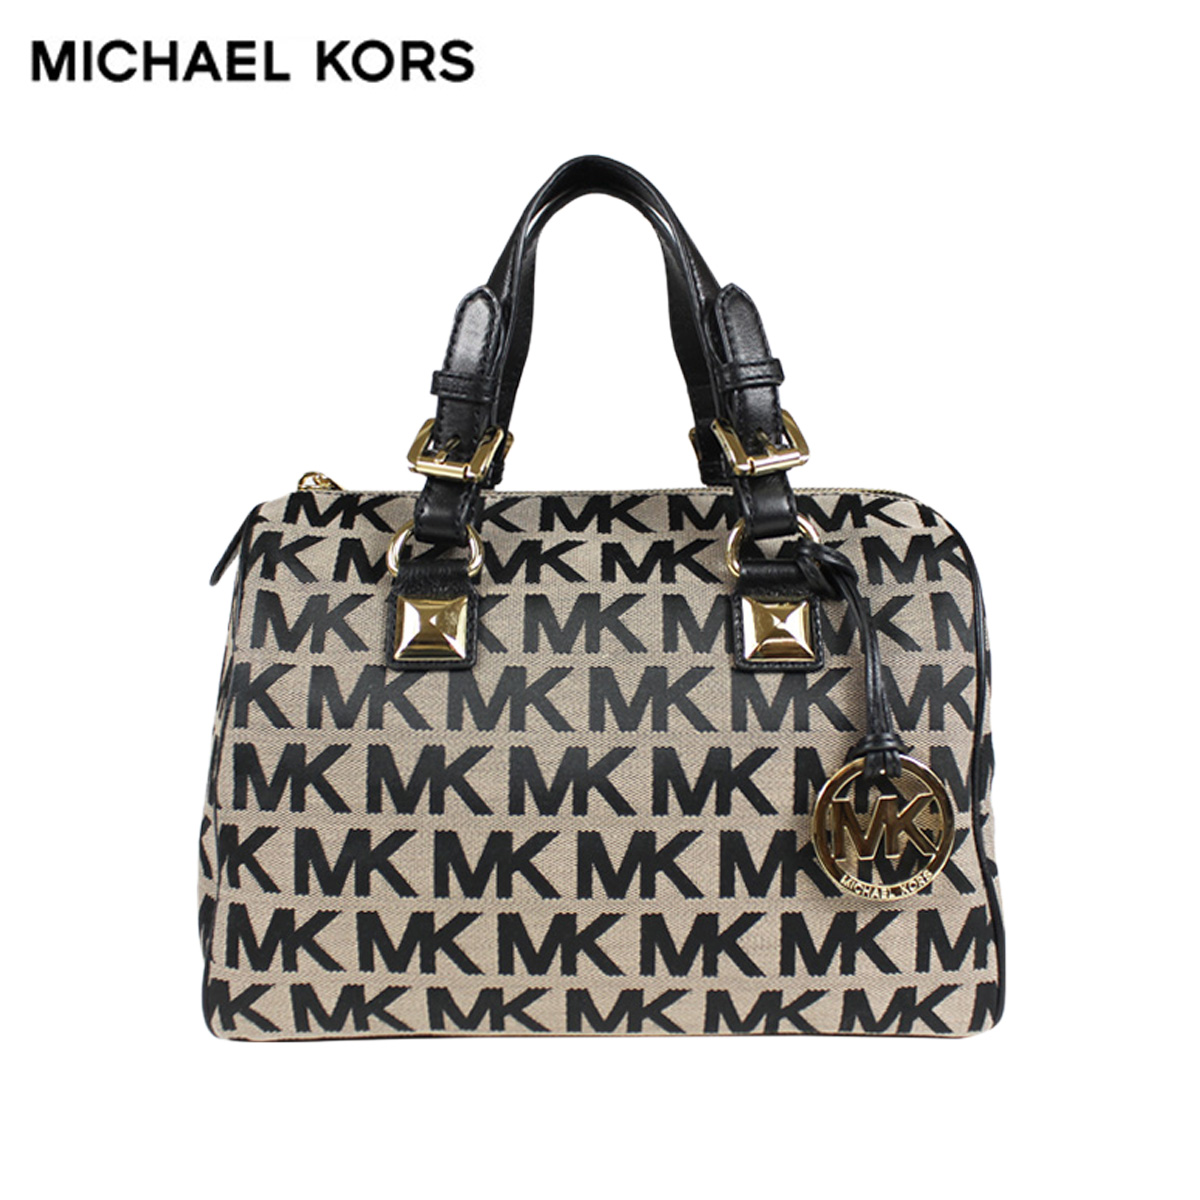 MK bags buy